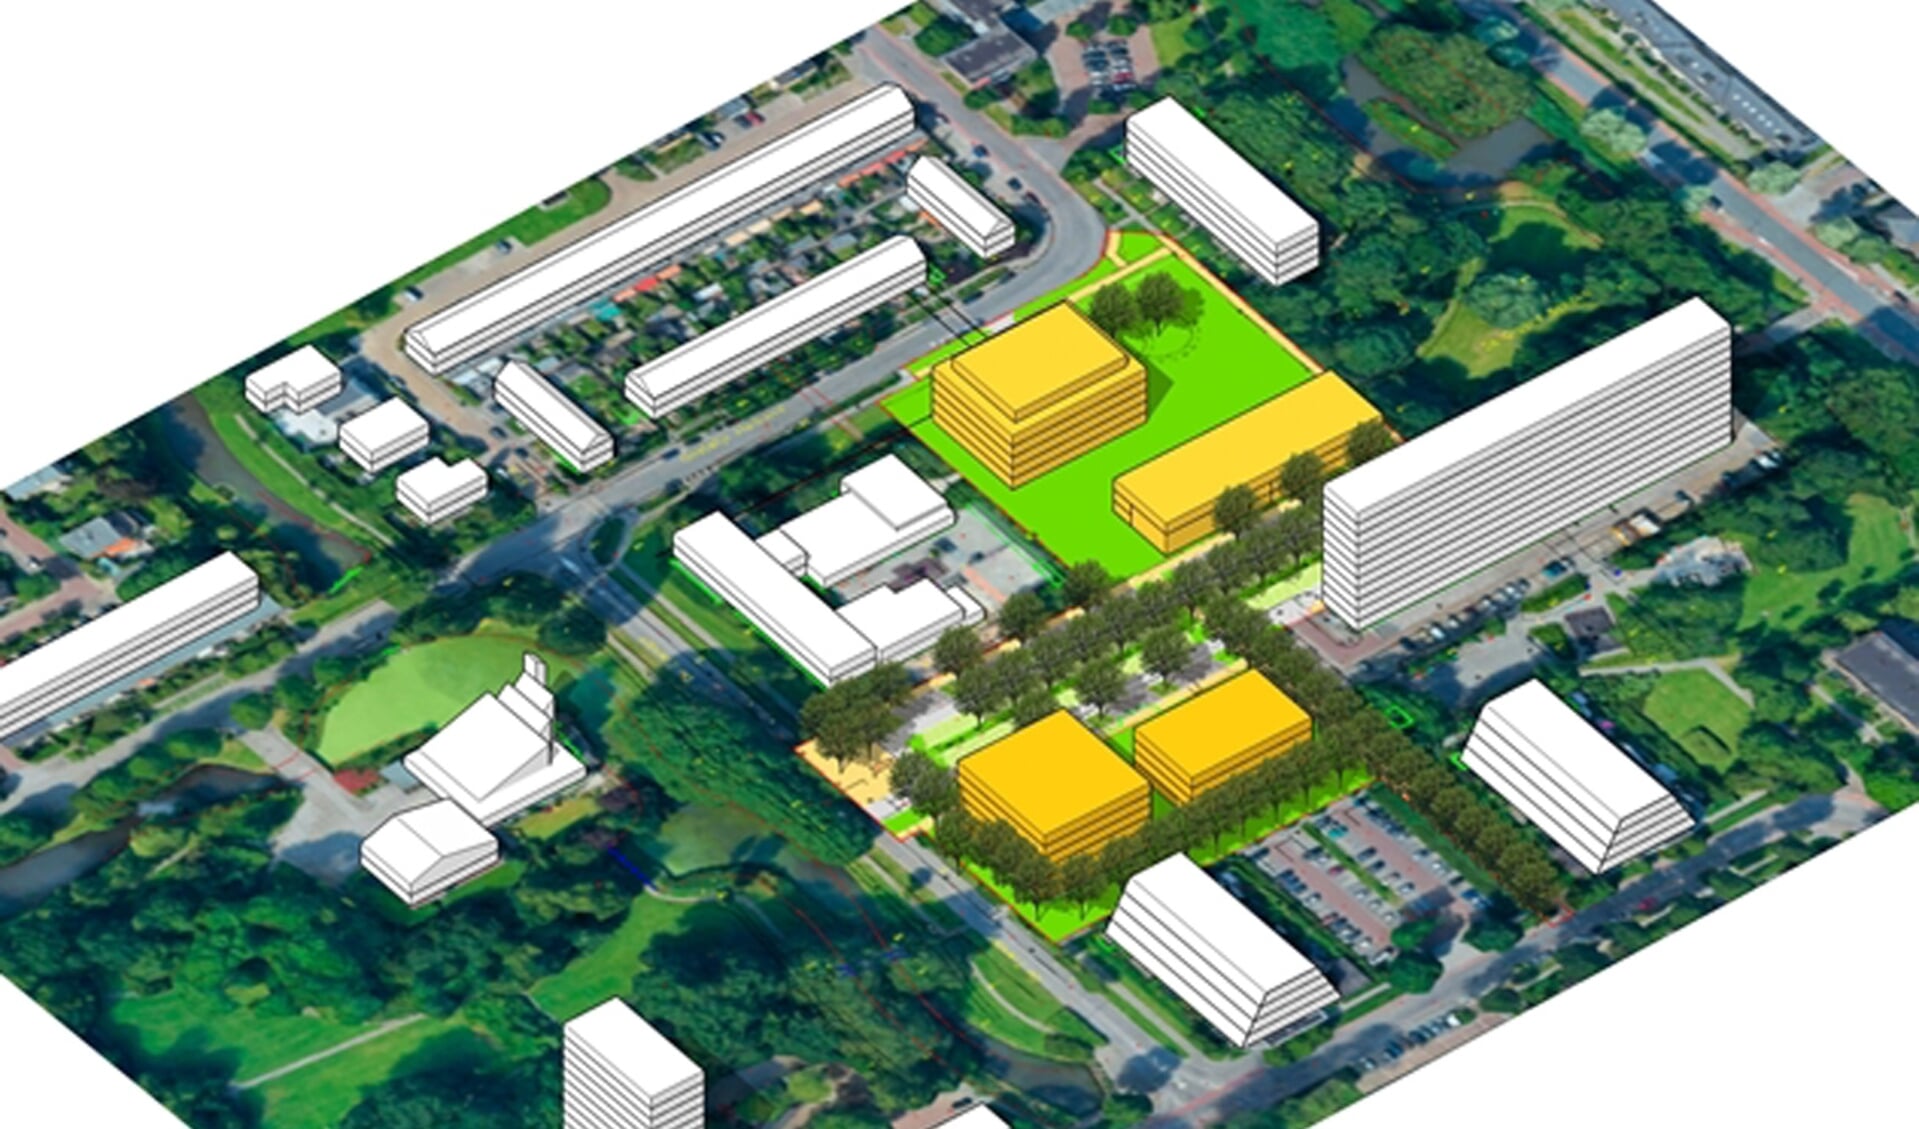 De nieuw te bouwen gebouwen (geel) in Bankras Kostverloren. Het college heeft onlangs voorgesteld het aan het Oostelijk Halfrond geplande appartementengebouw van zes bouwlagen op te splitsen in twee kleinere gebouwen met vijf lagen